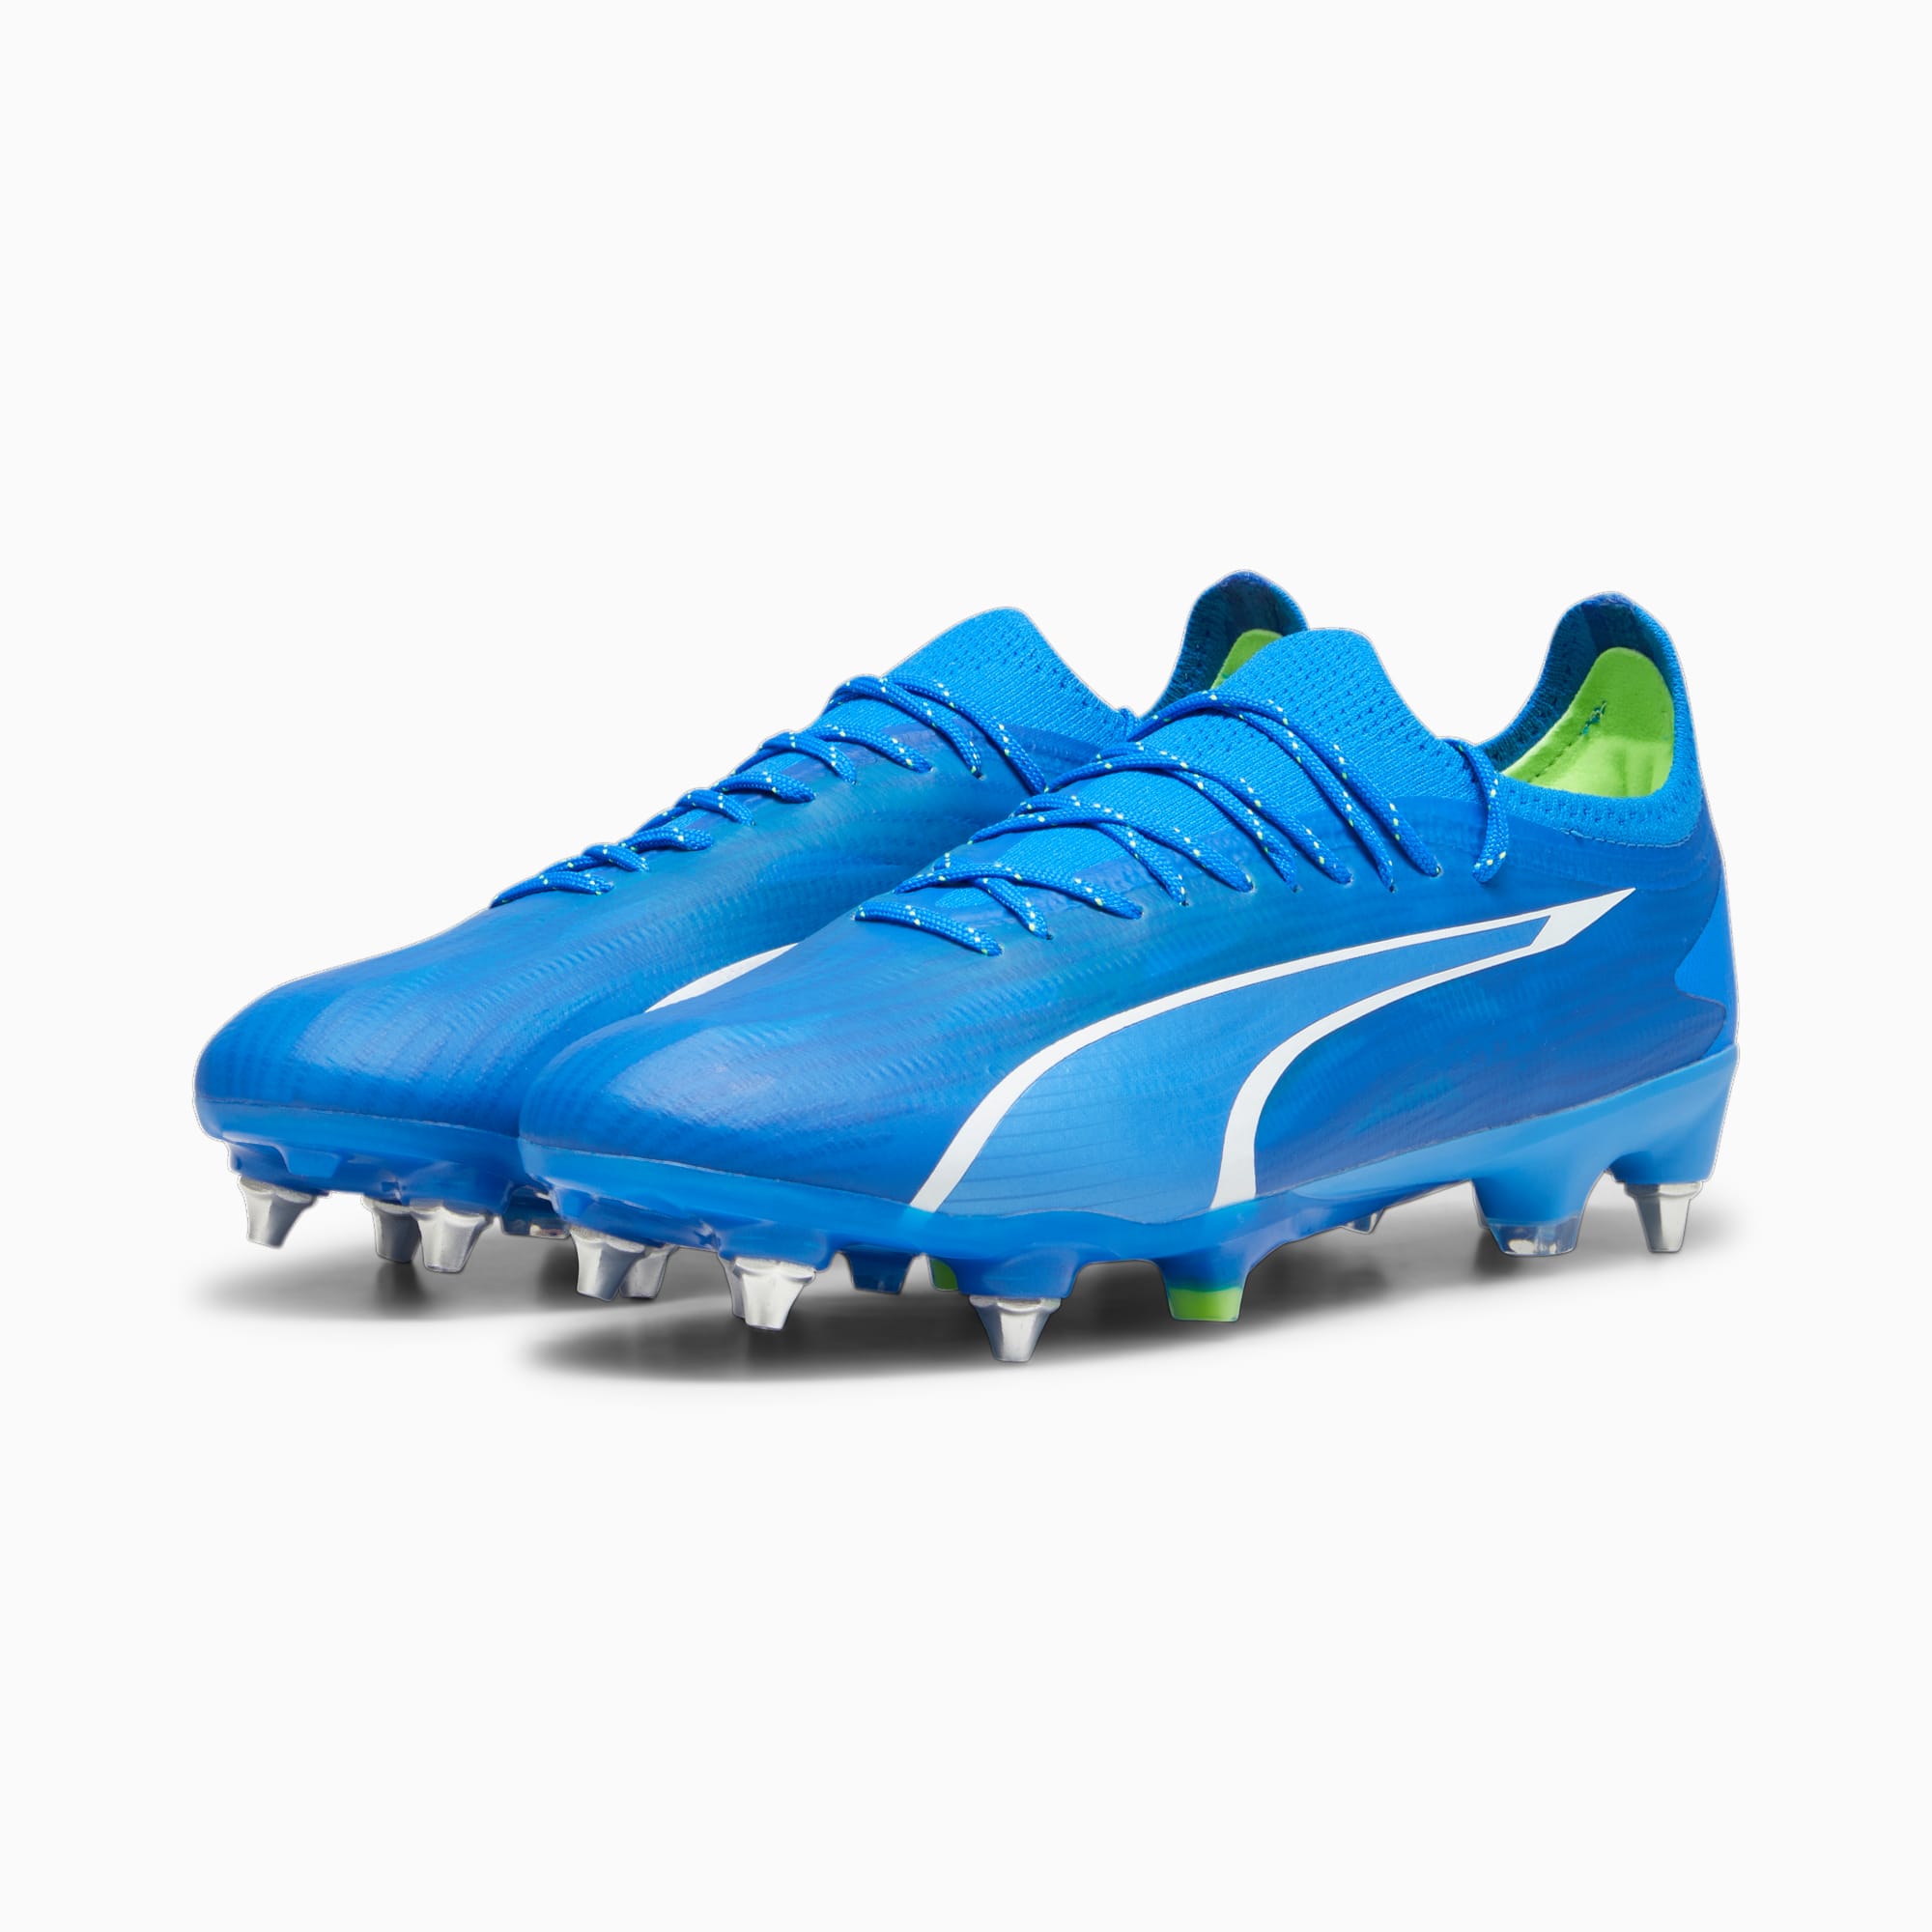 PUMA Chaussures De Football ULTRA ULTIMATE MxSG Pour Homme, Bleu/Vert/Blanc